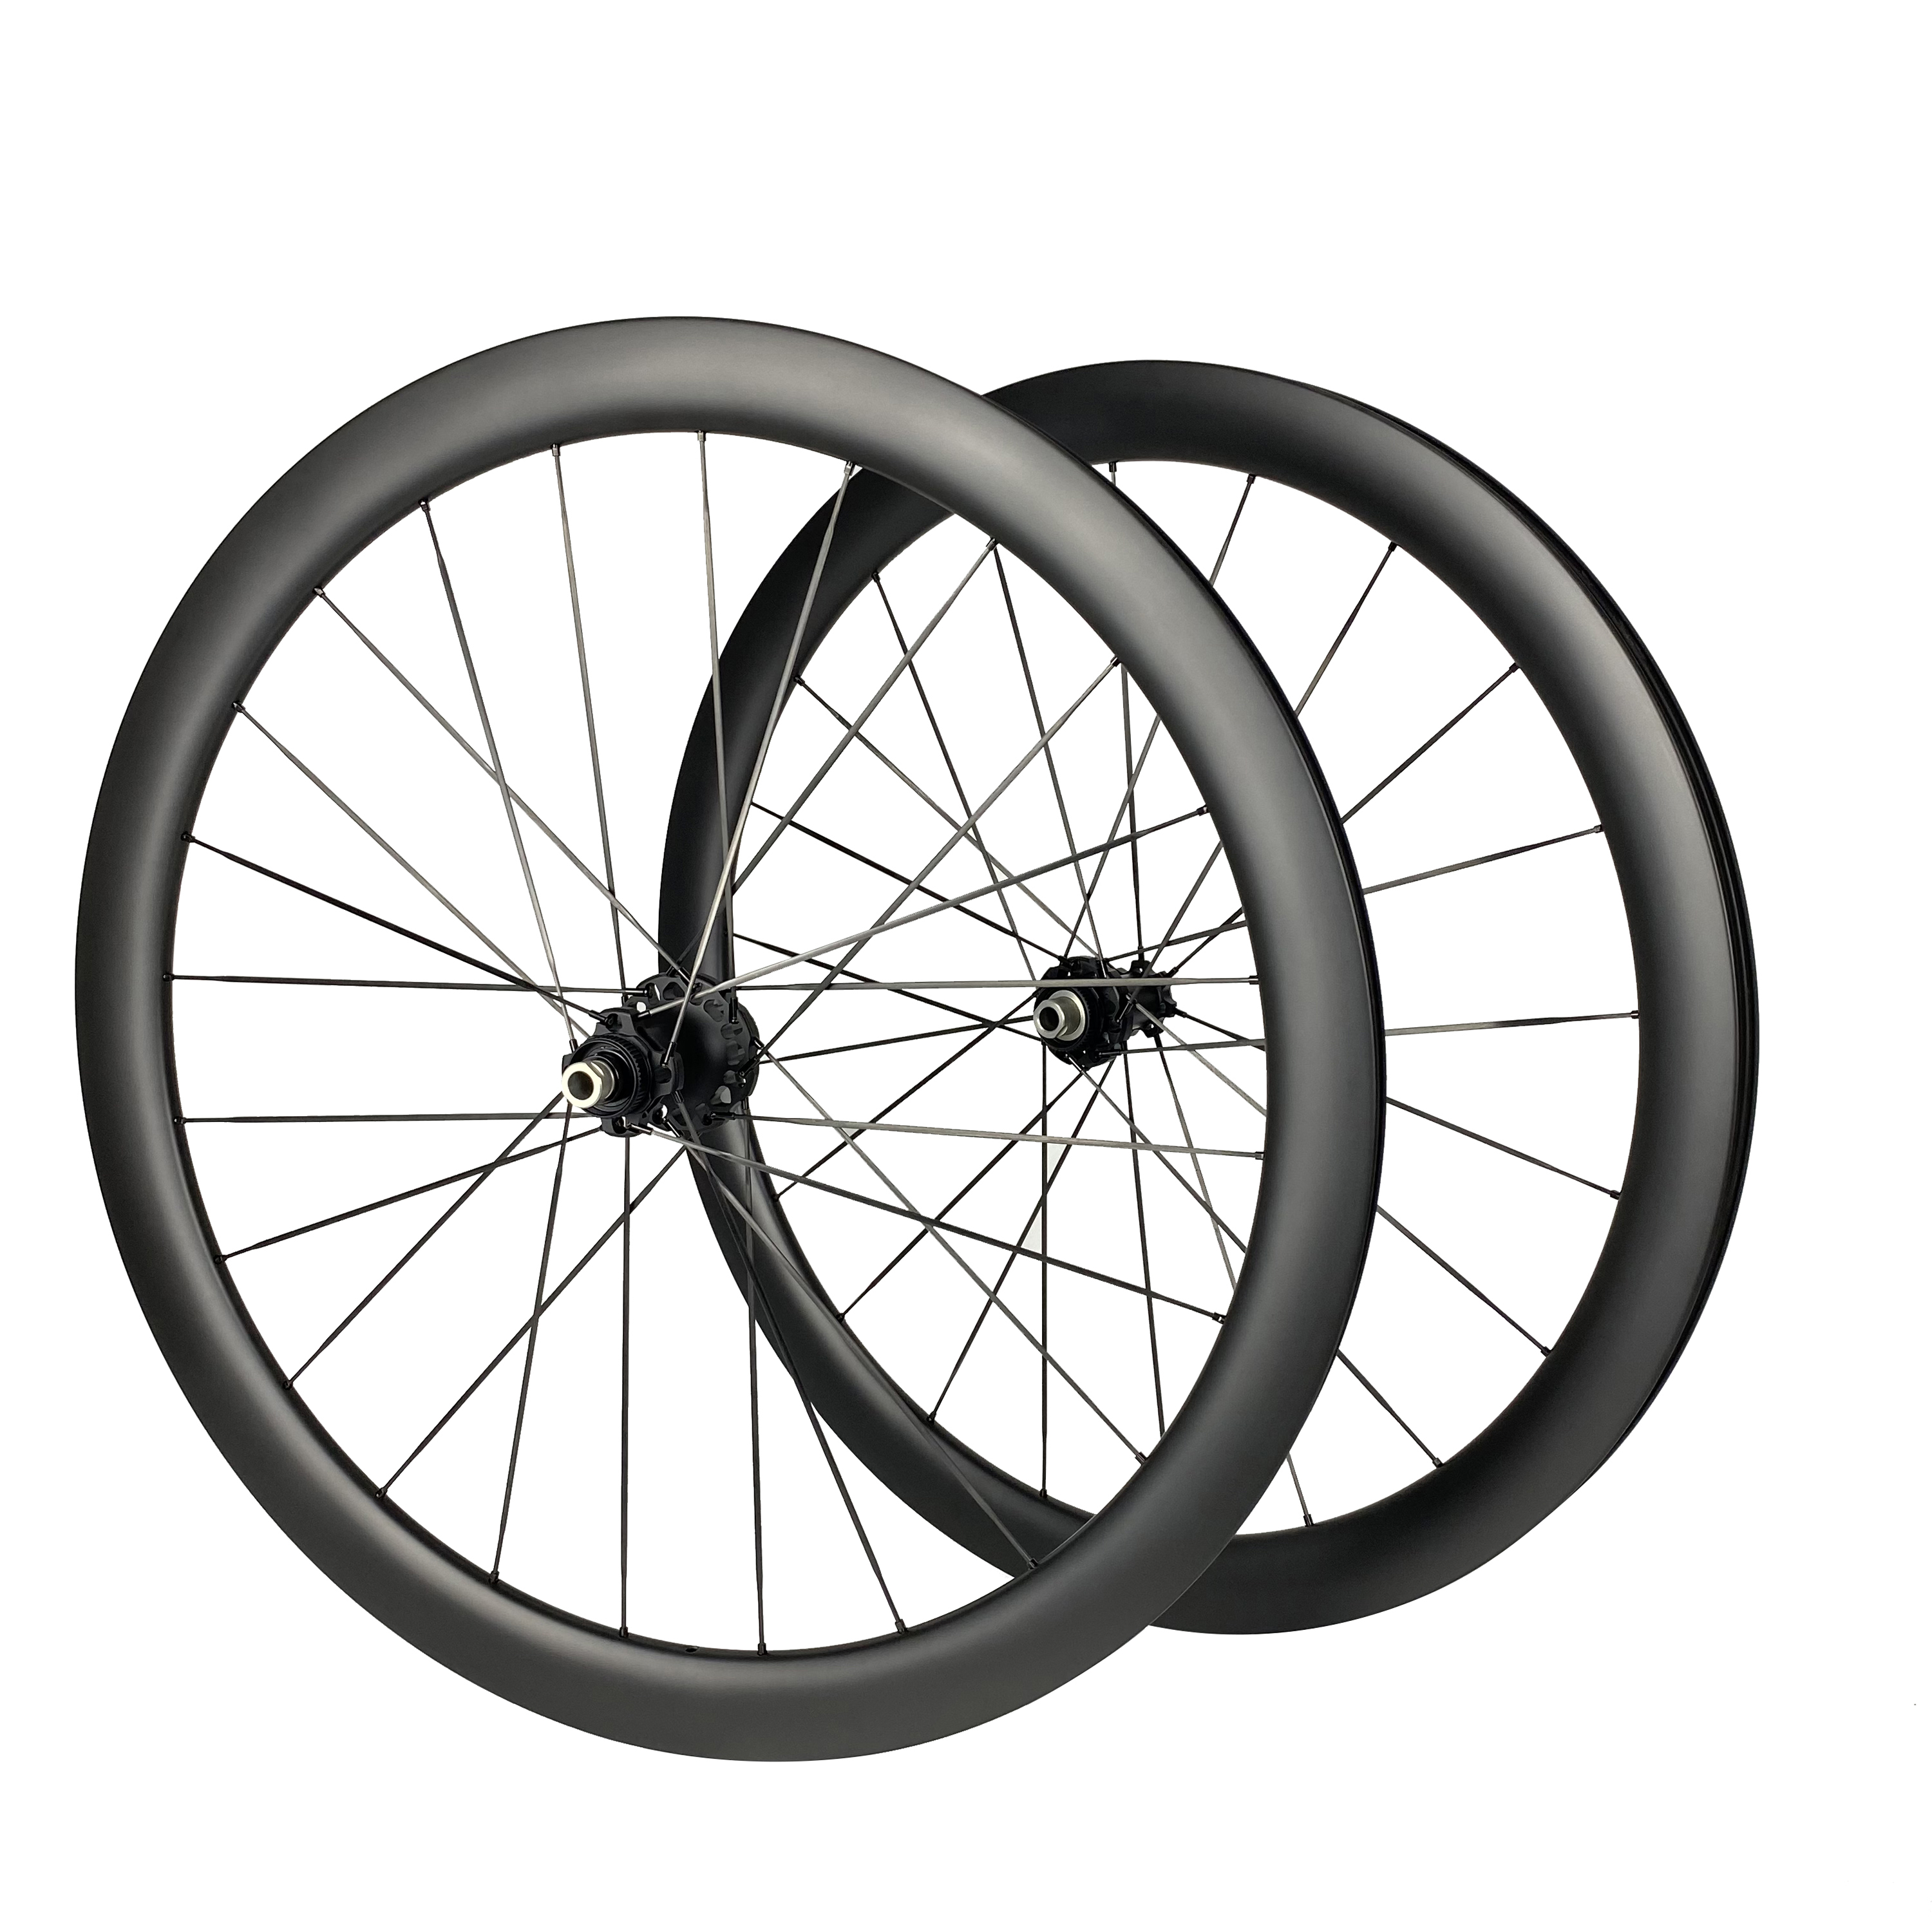 carbon spoke wheelset DISC PE 50 Ceramic bearing ultralight wheelset 1280g